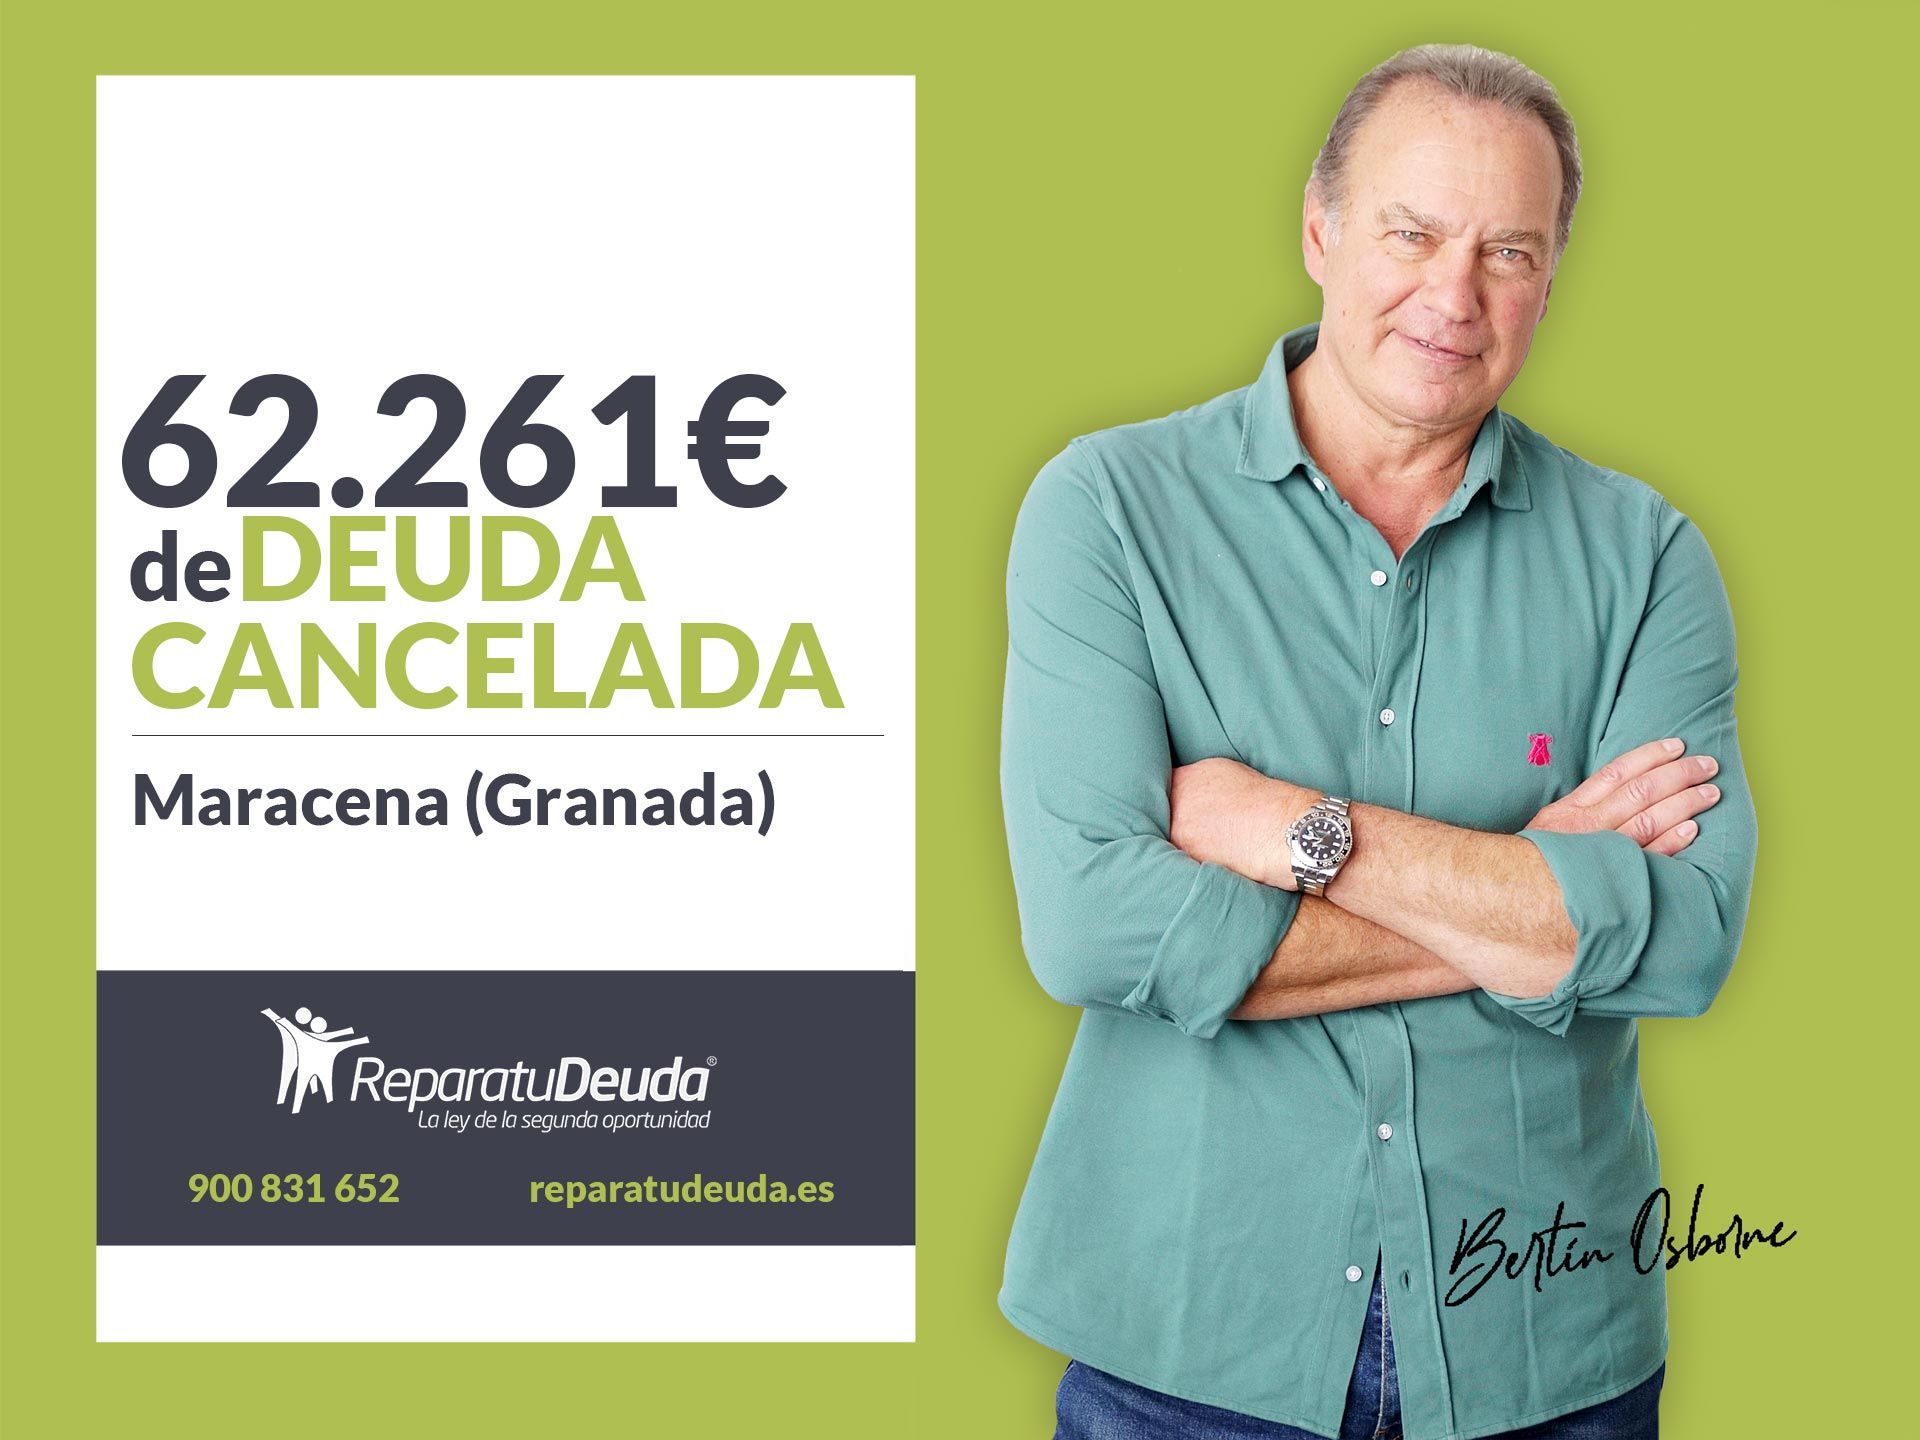 Repara tu Deuda Abogados cancela 62.261? en Maracena (Granada) con la Ley de la Segunda Oportunidad